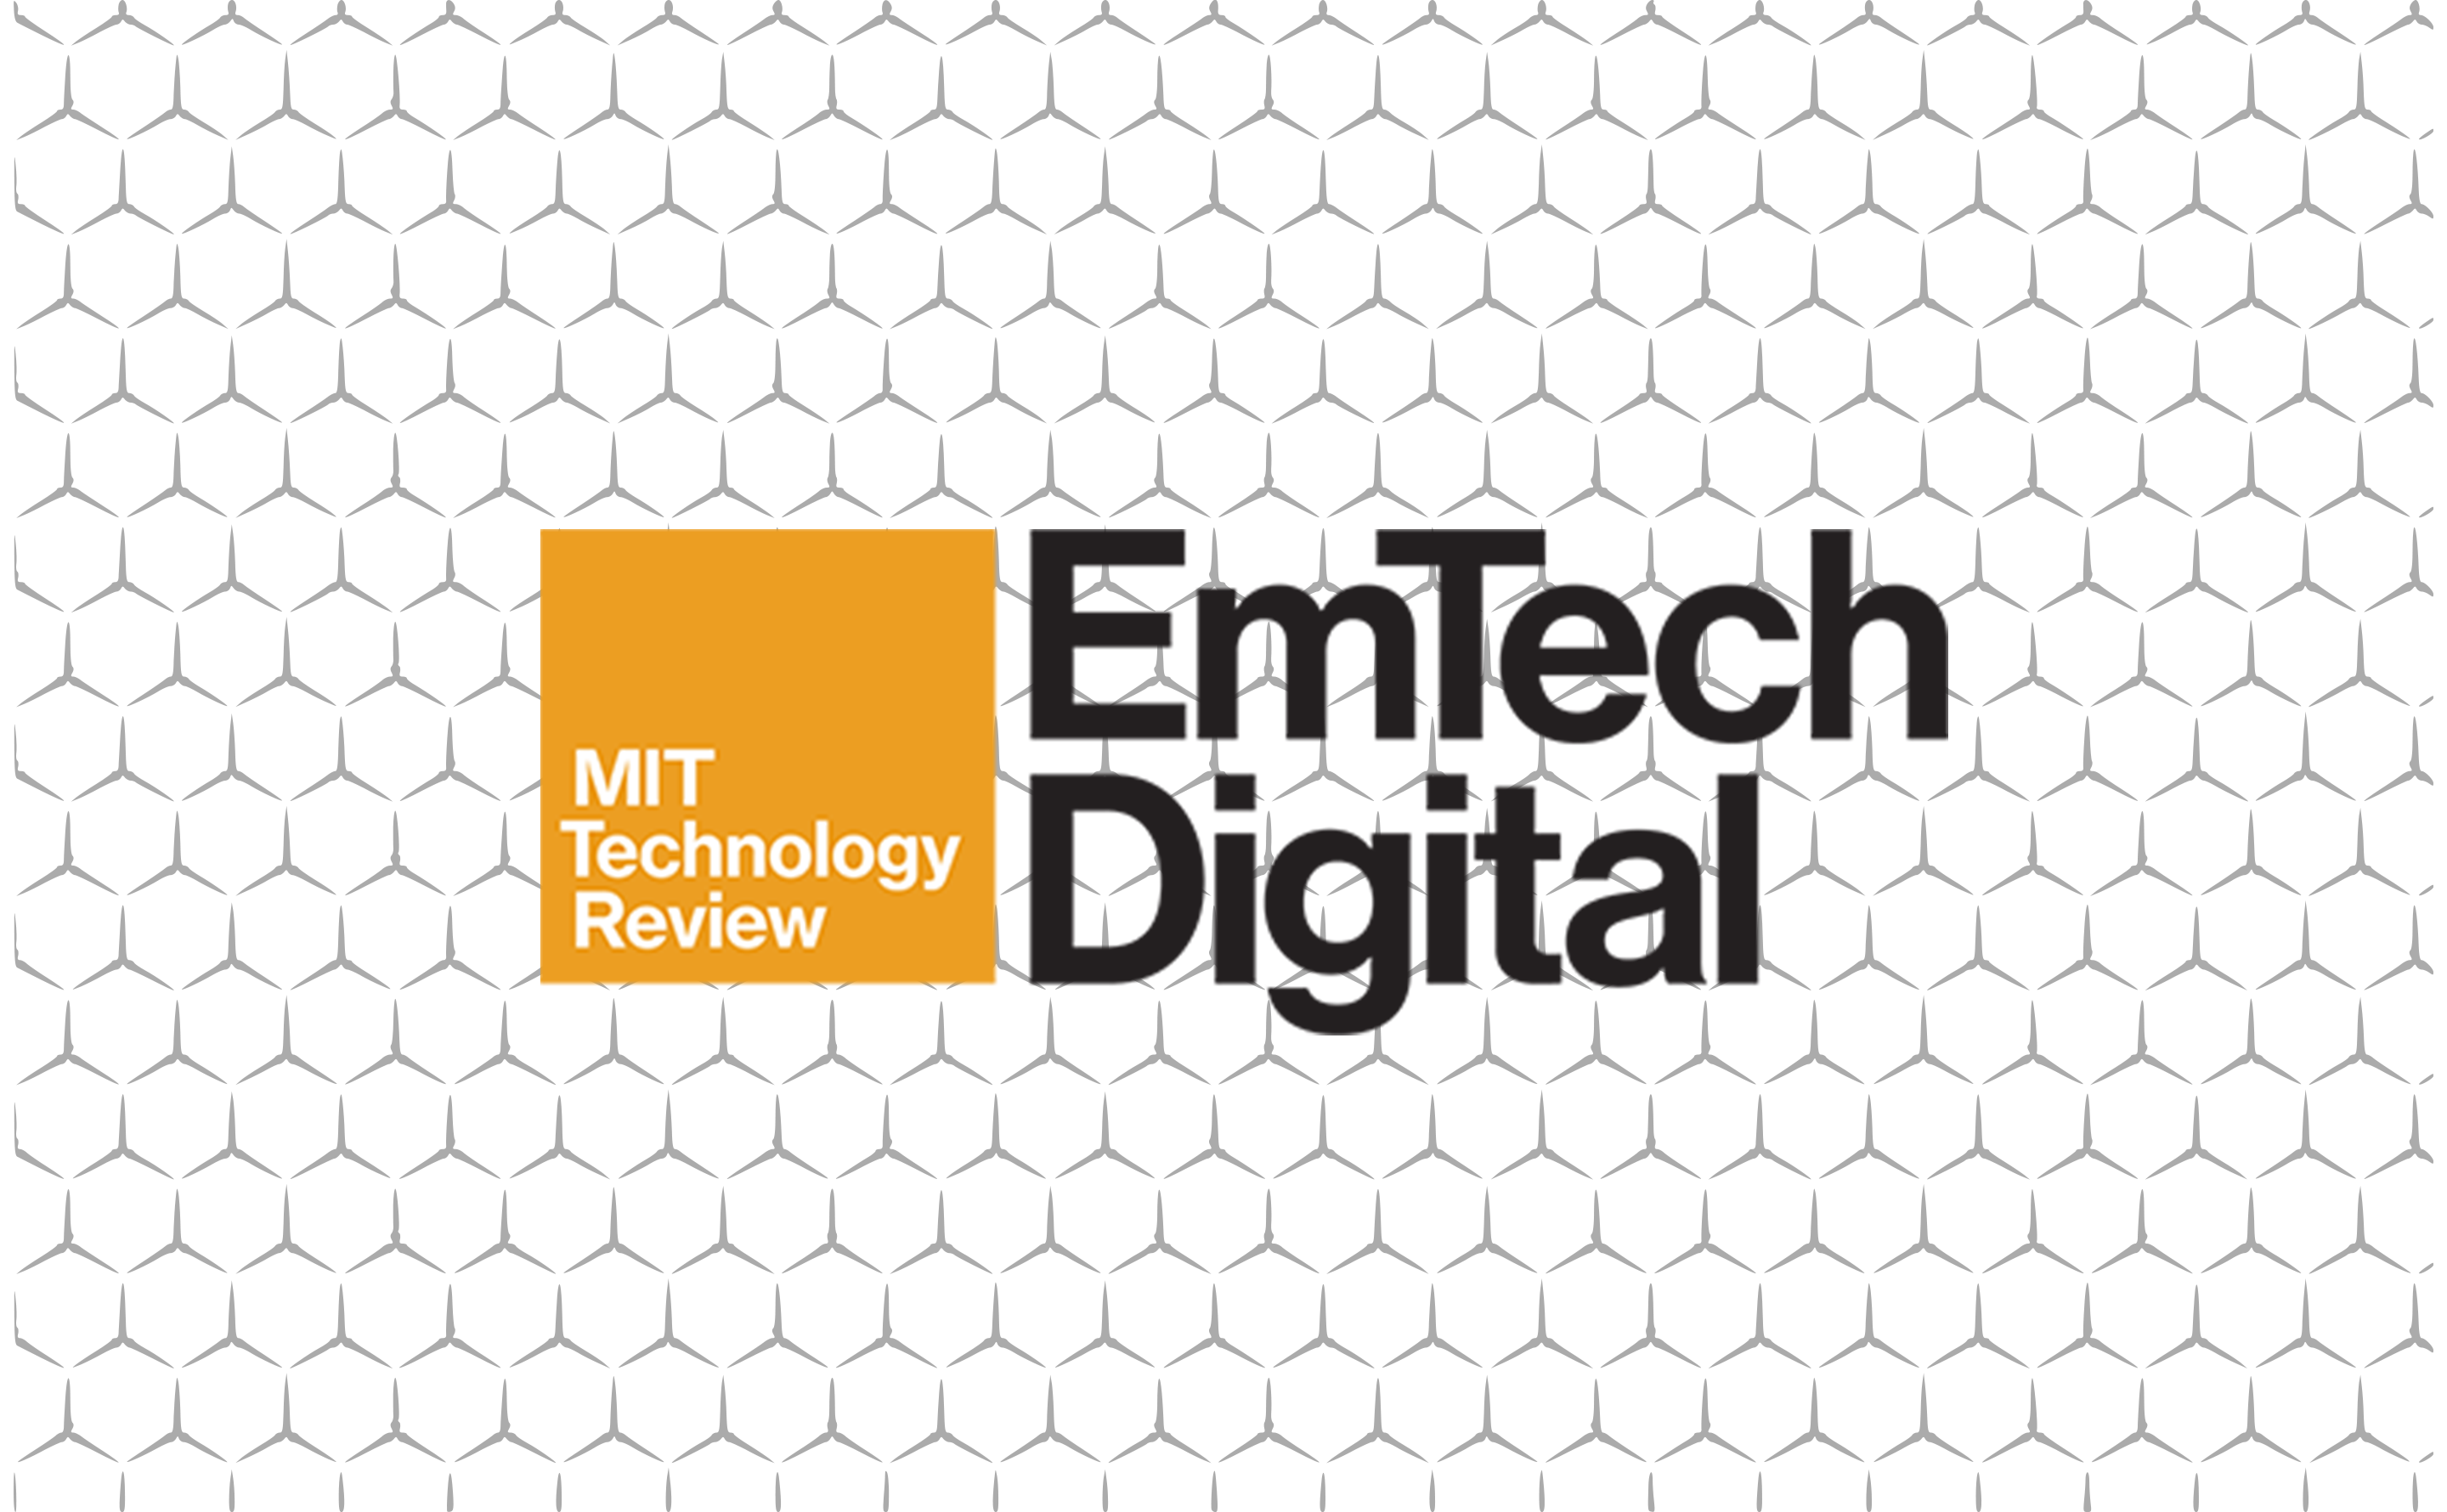 EmTech Digital